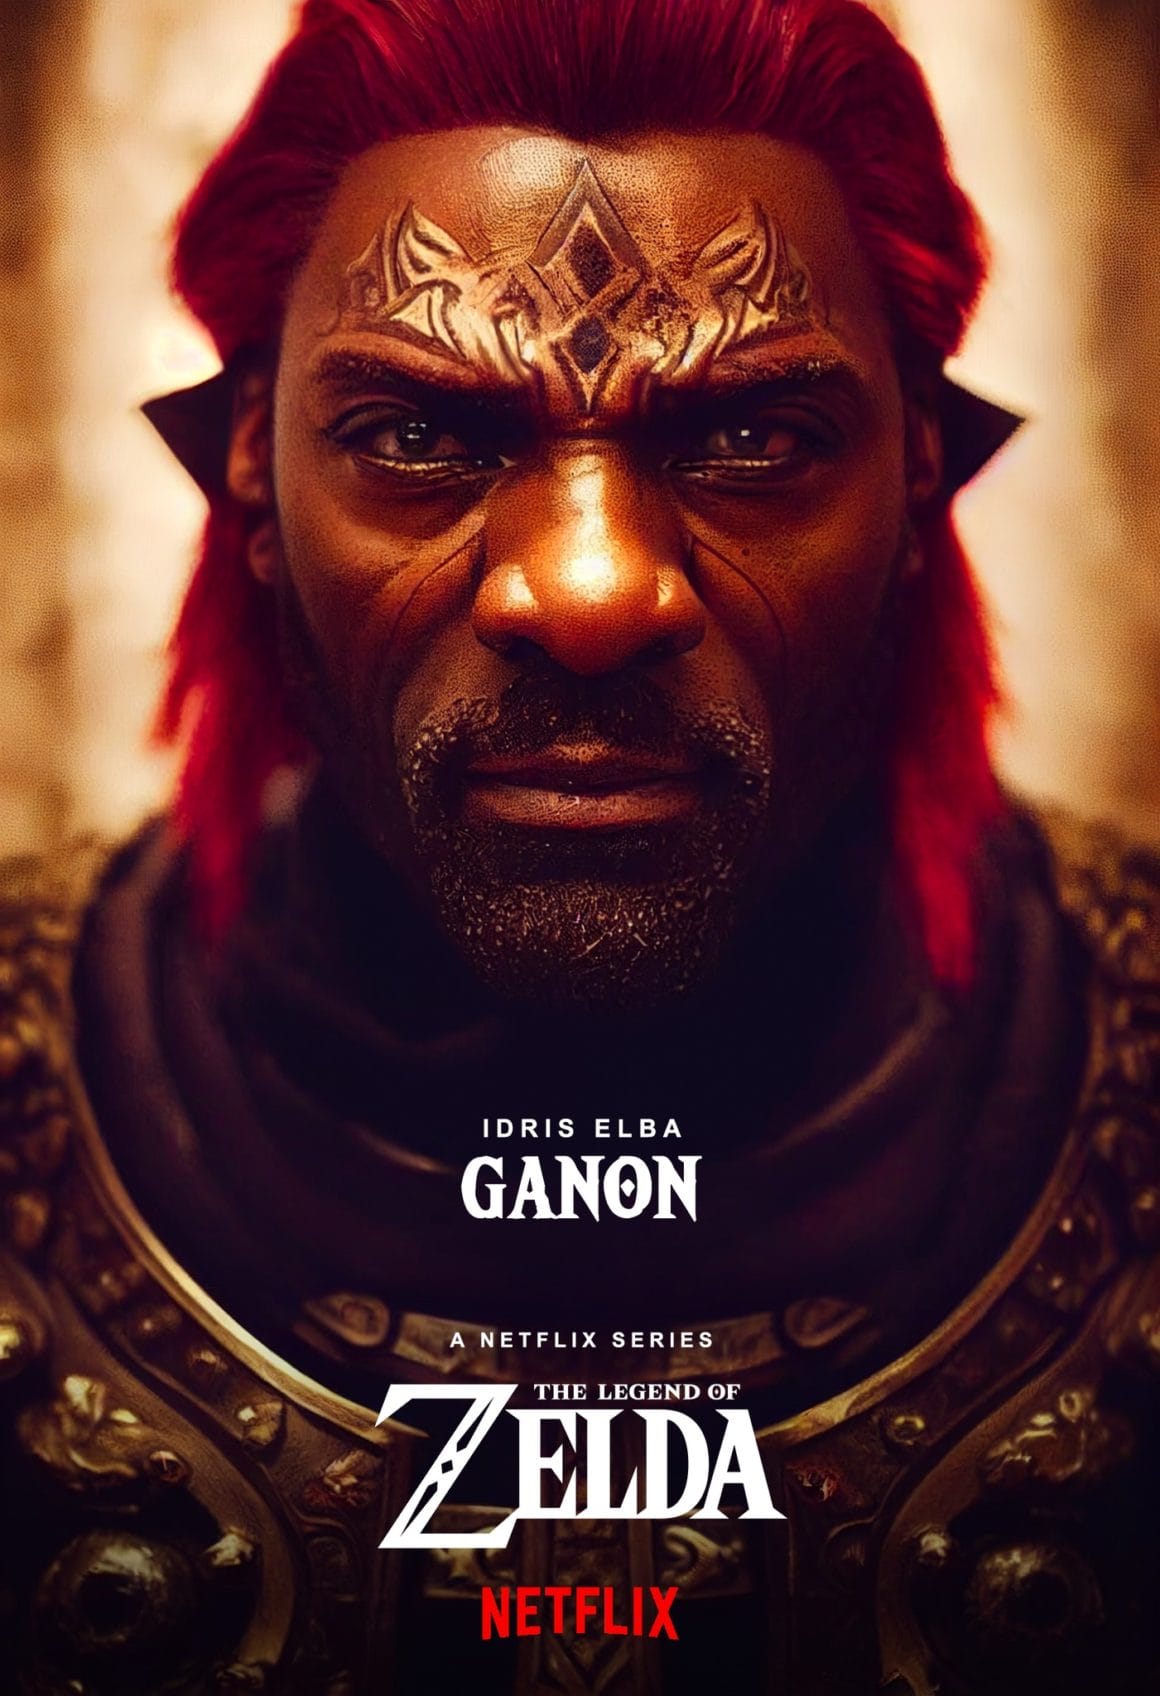 Fausse affiche d'une série Netflix avec l'acteur Idris Elba déguisé en Ganon